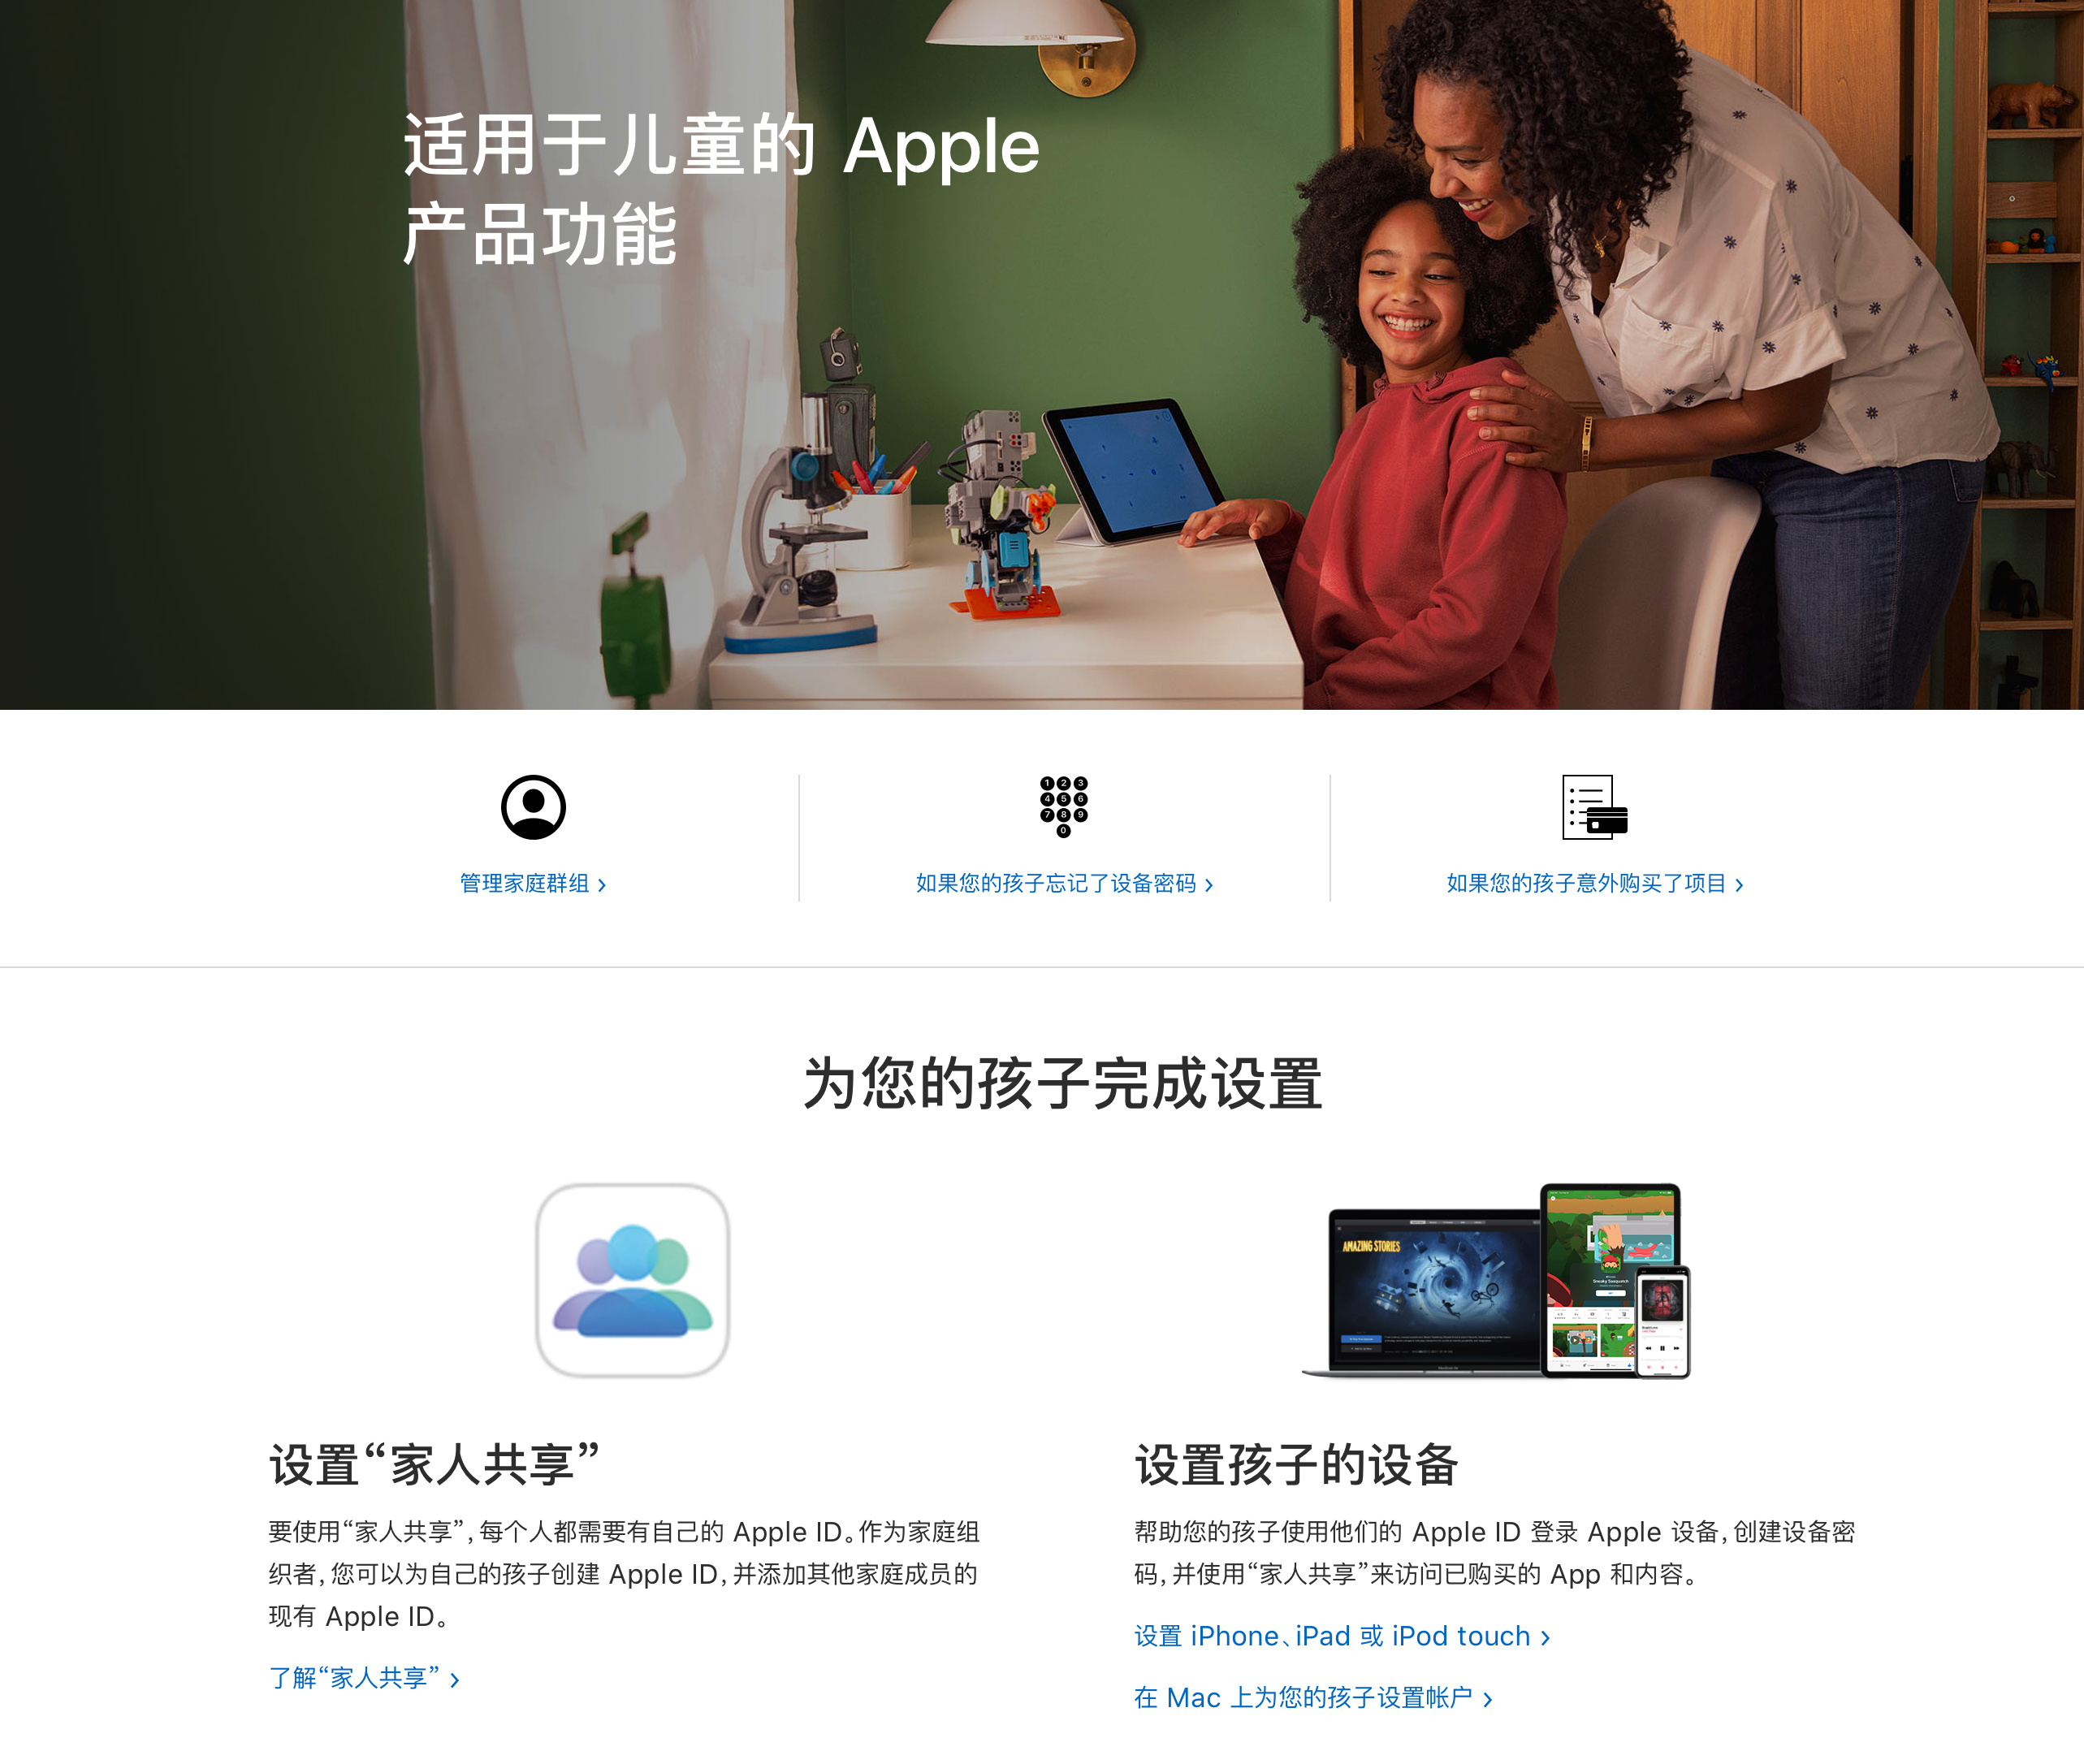 苹果发布新页面：介绍适用于儿童的Apple产品功能（苹果手机儿童版怎么下载微信）